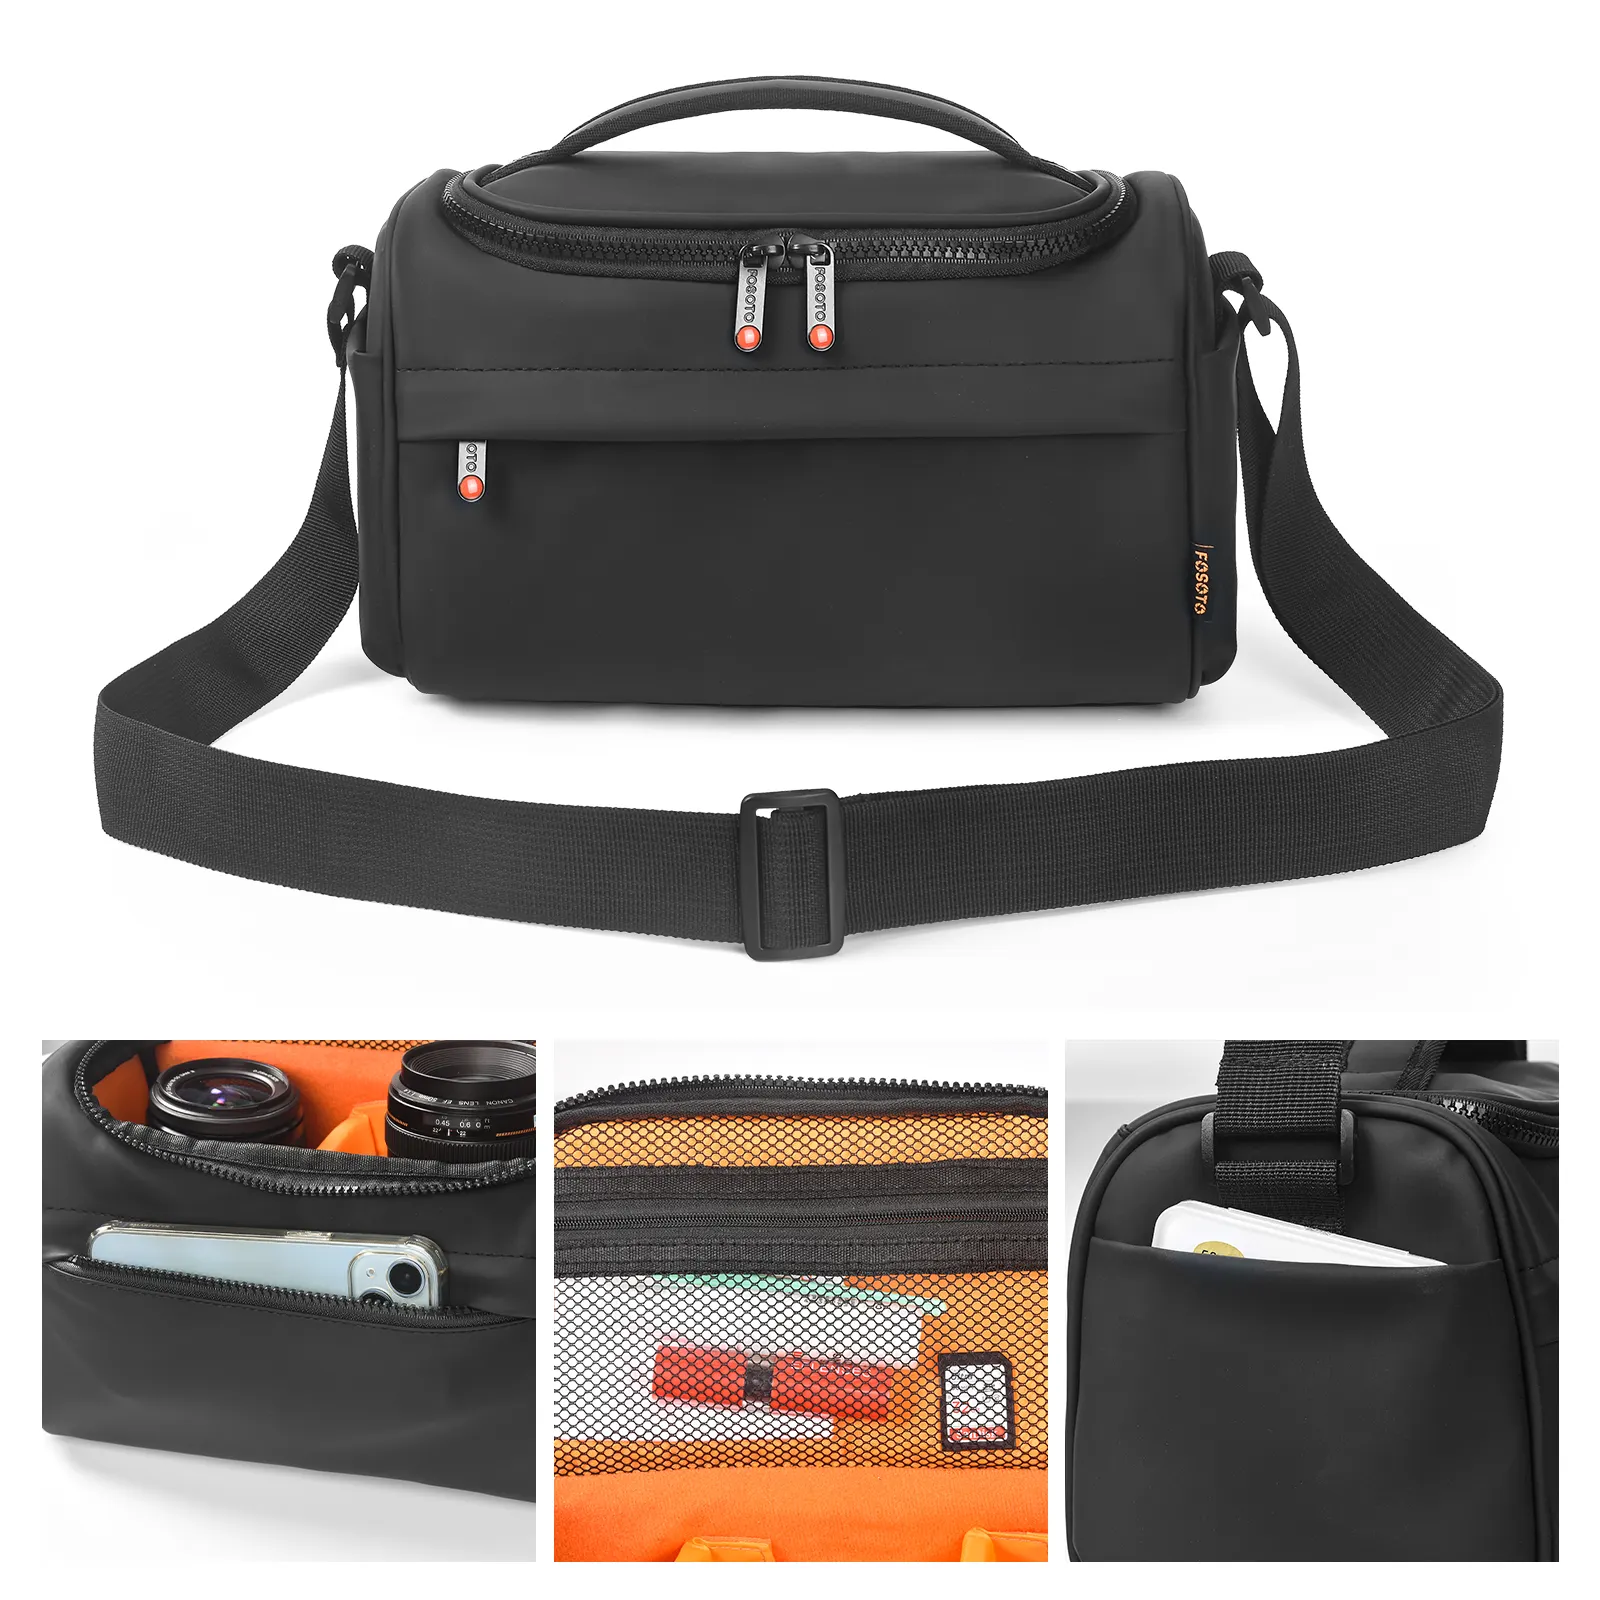 FOSOTO büyük kapasiteli su geçirmez Dslr kamera torba koruyucu kılıf ile hafif basit omuz çantası naylon kamera kılıfı